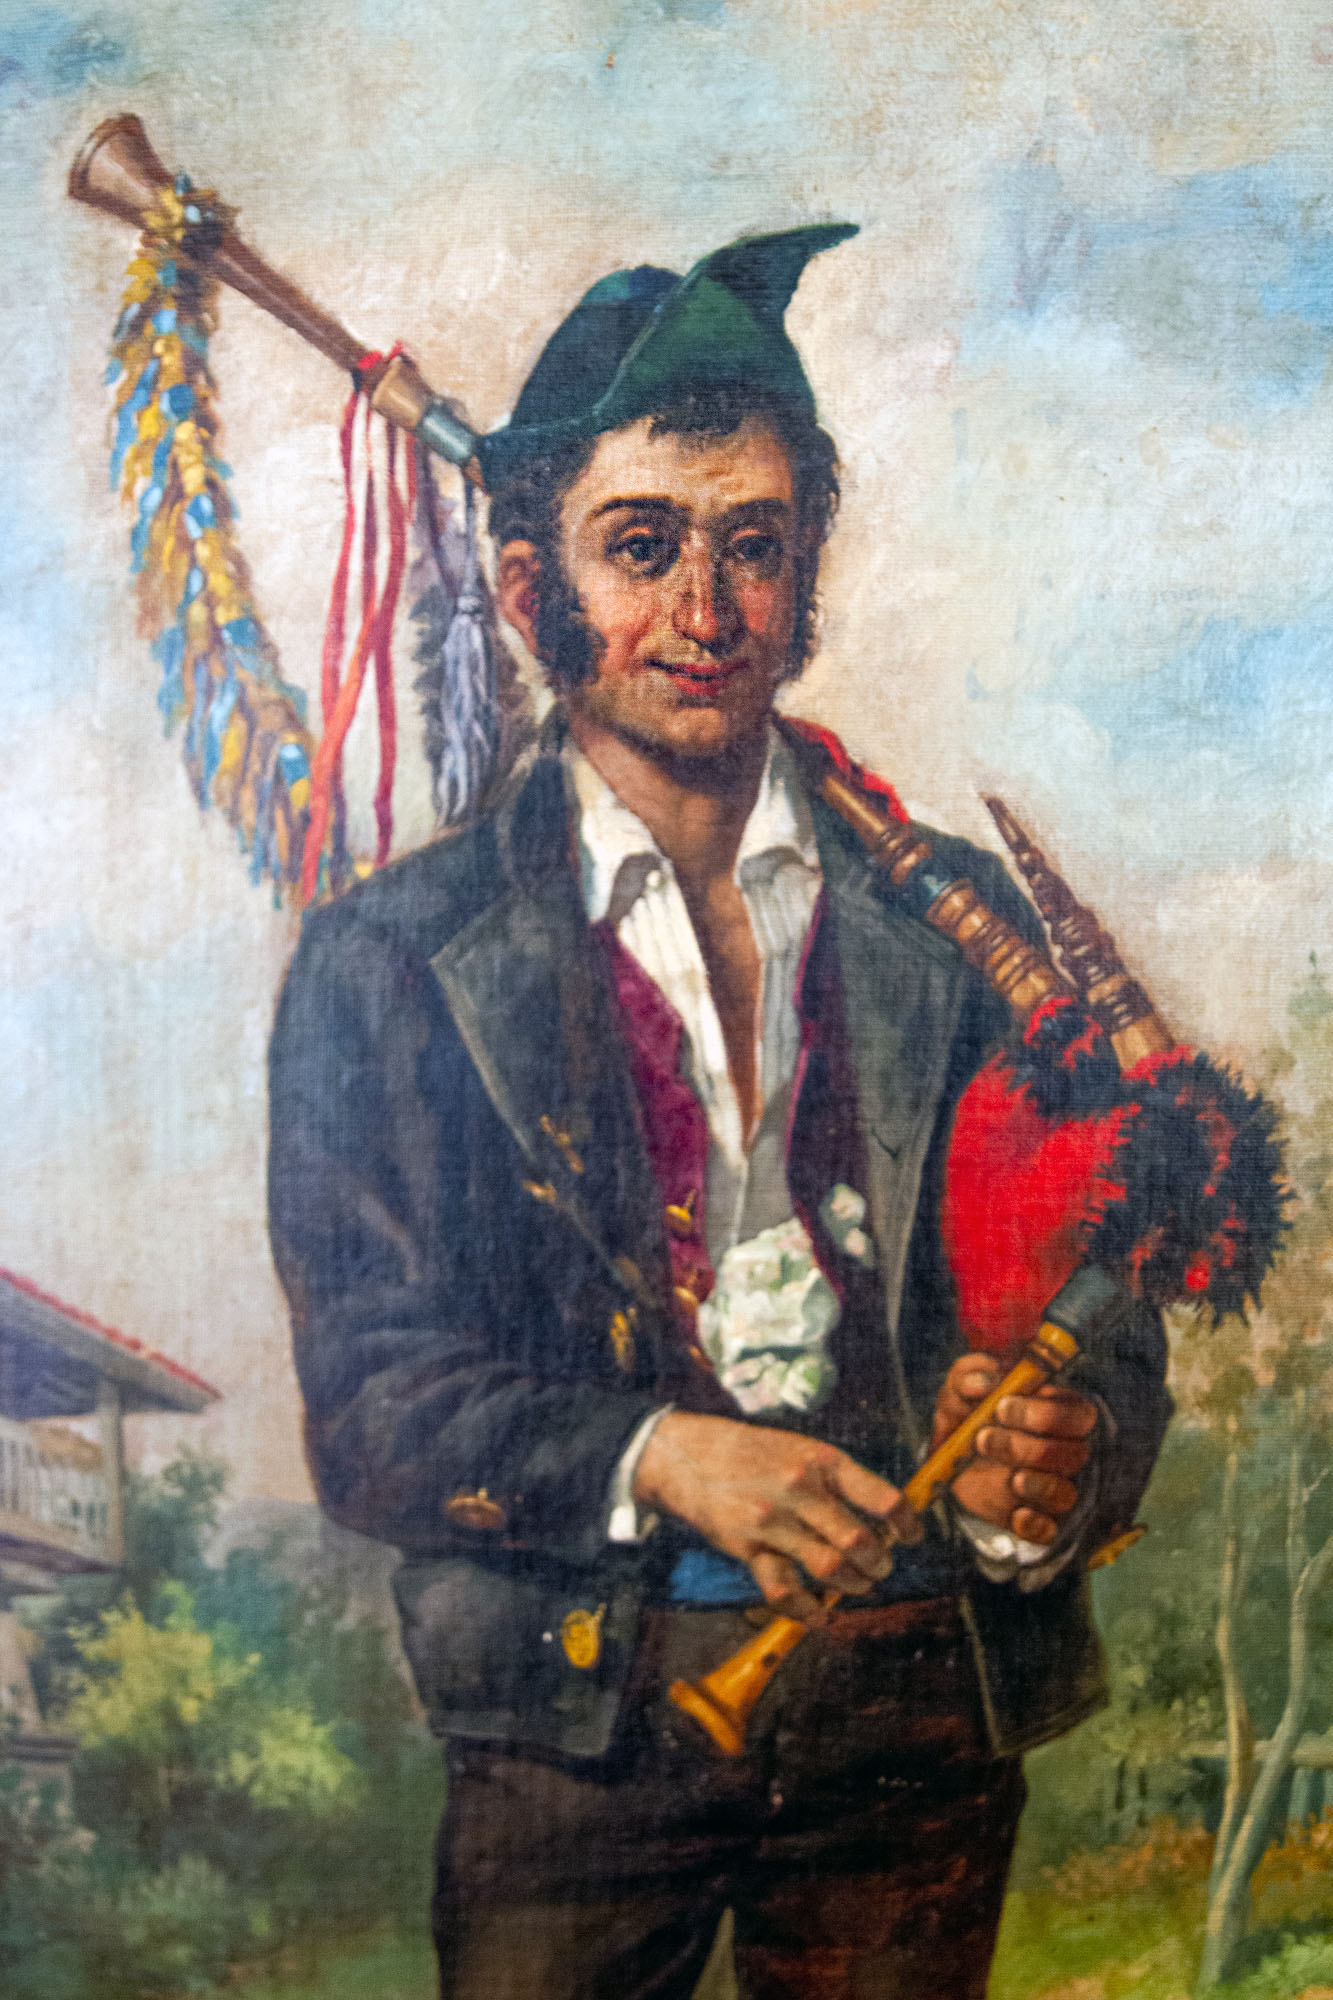 Man Asturias Painting playing bag pipe